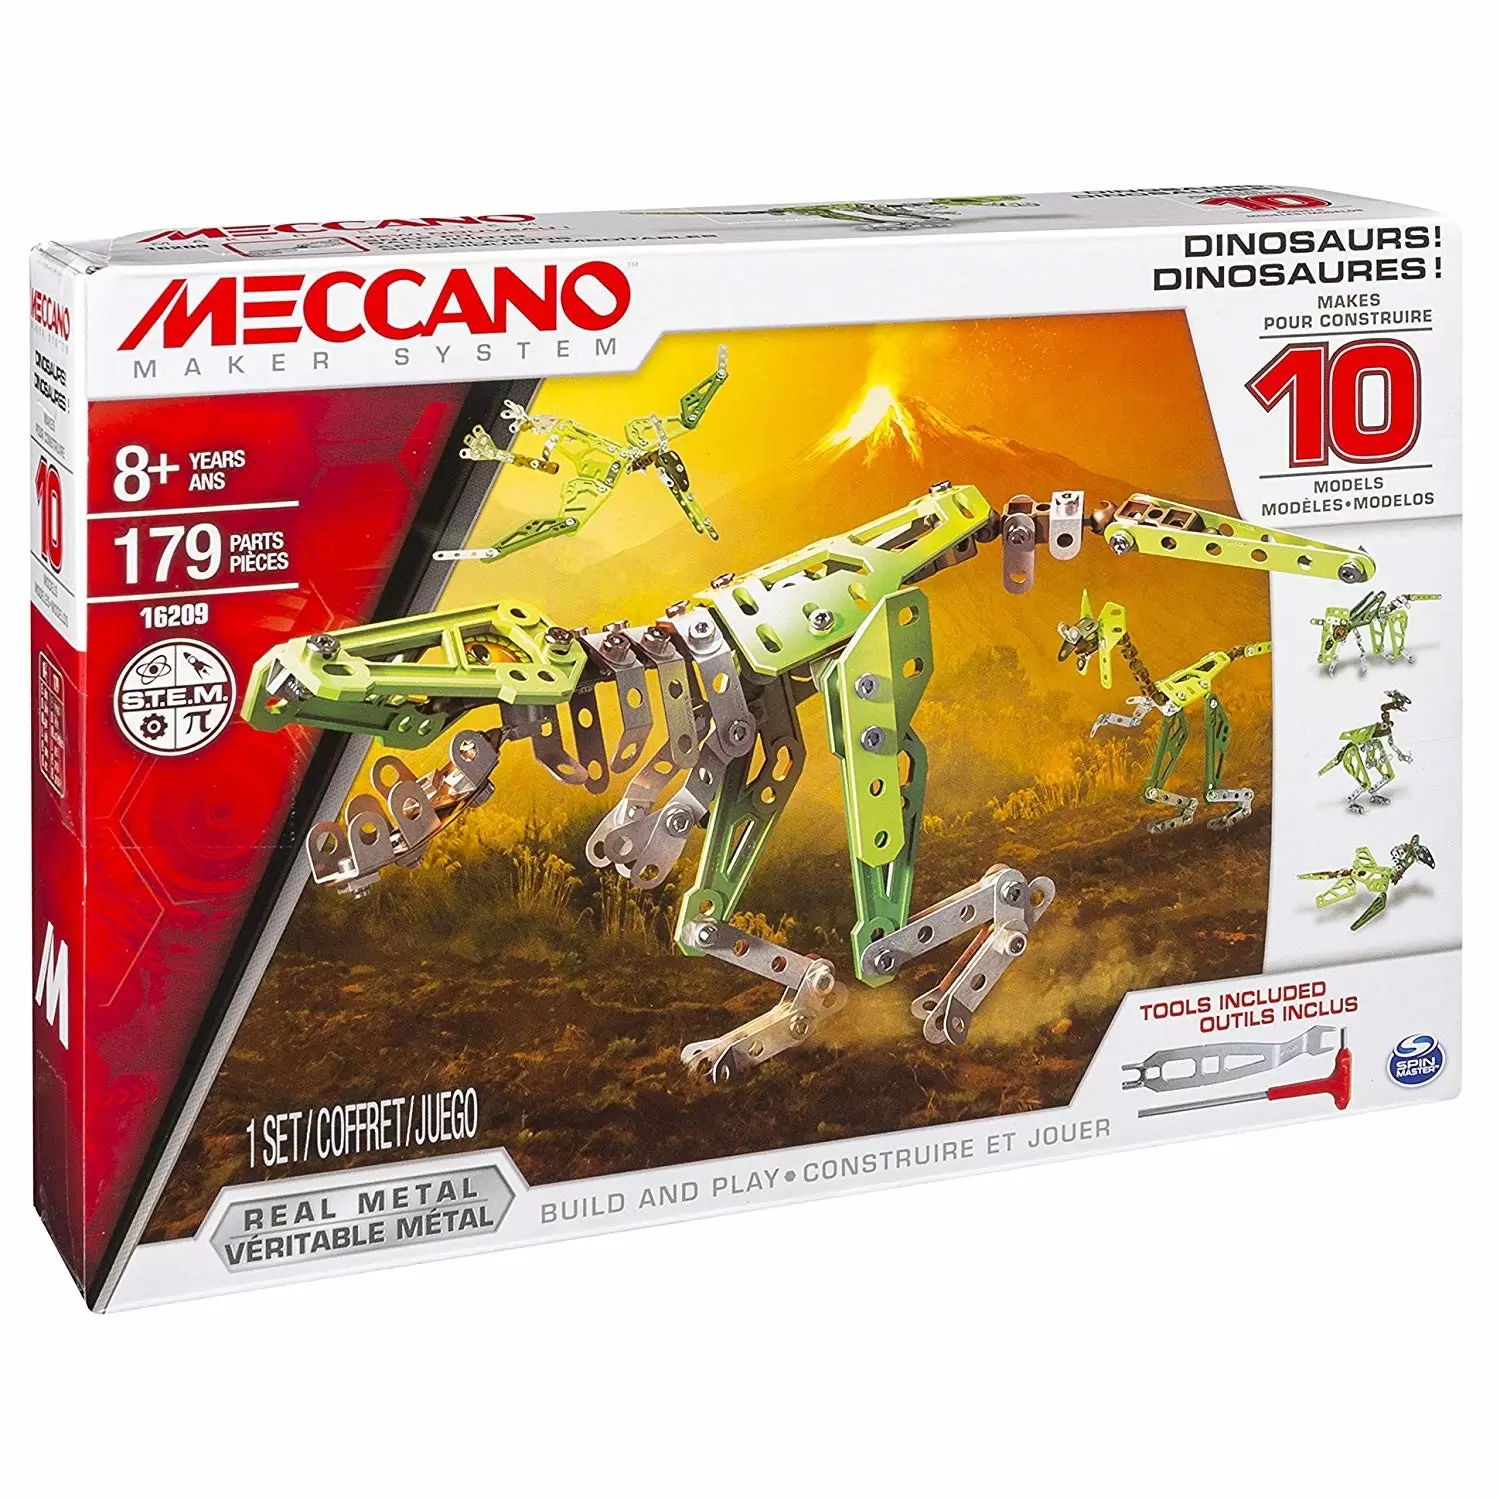 Meccano - Dinosaures 10 modèles